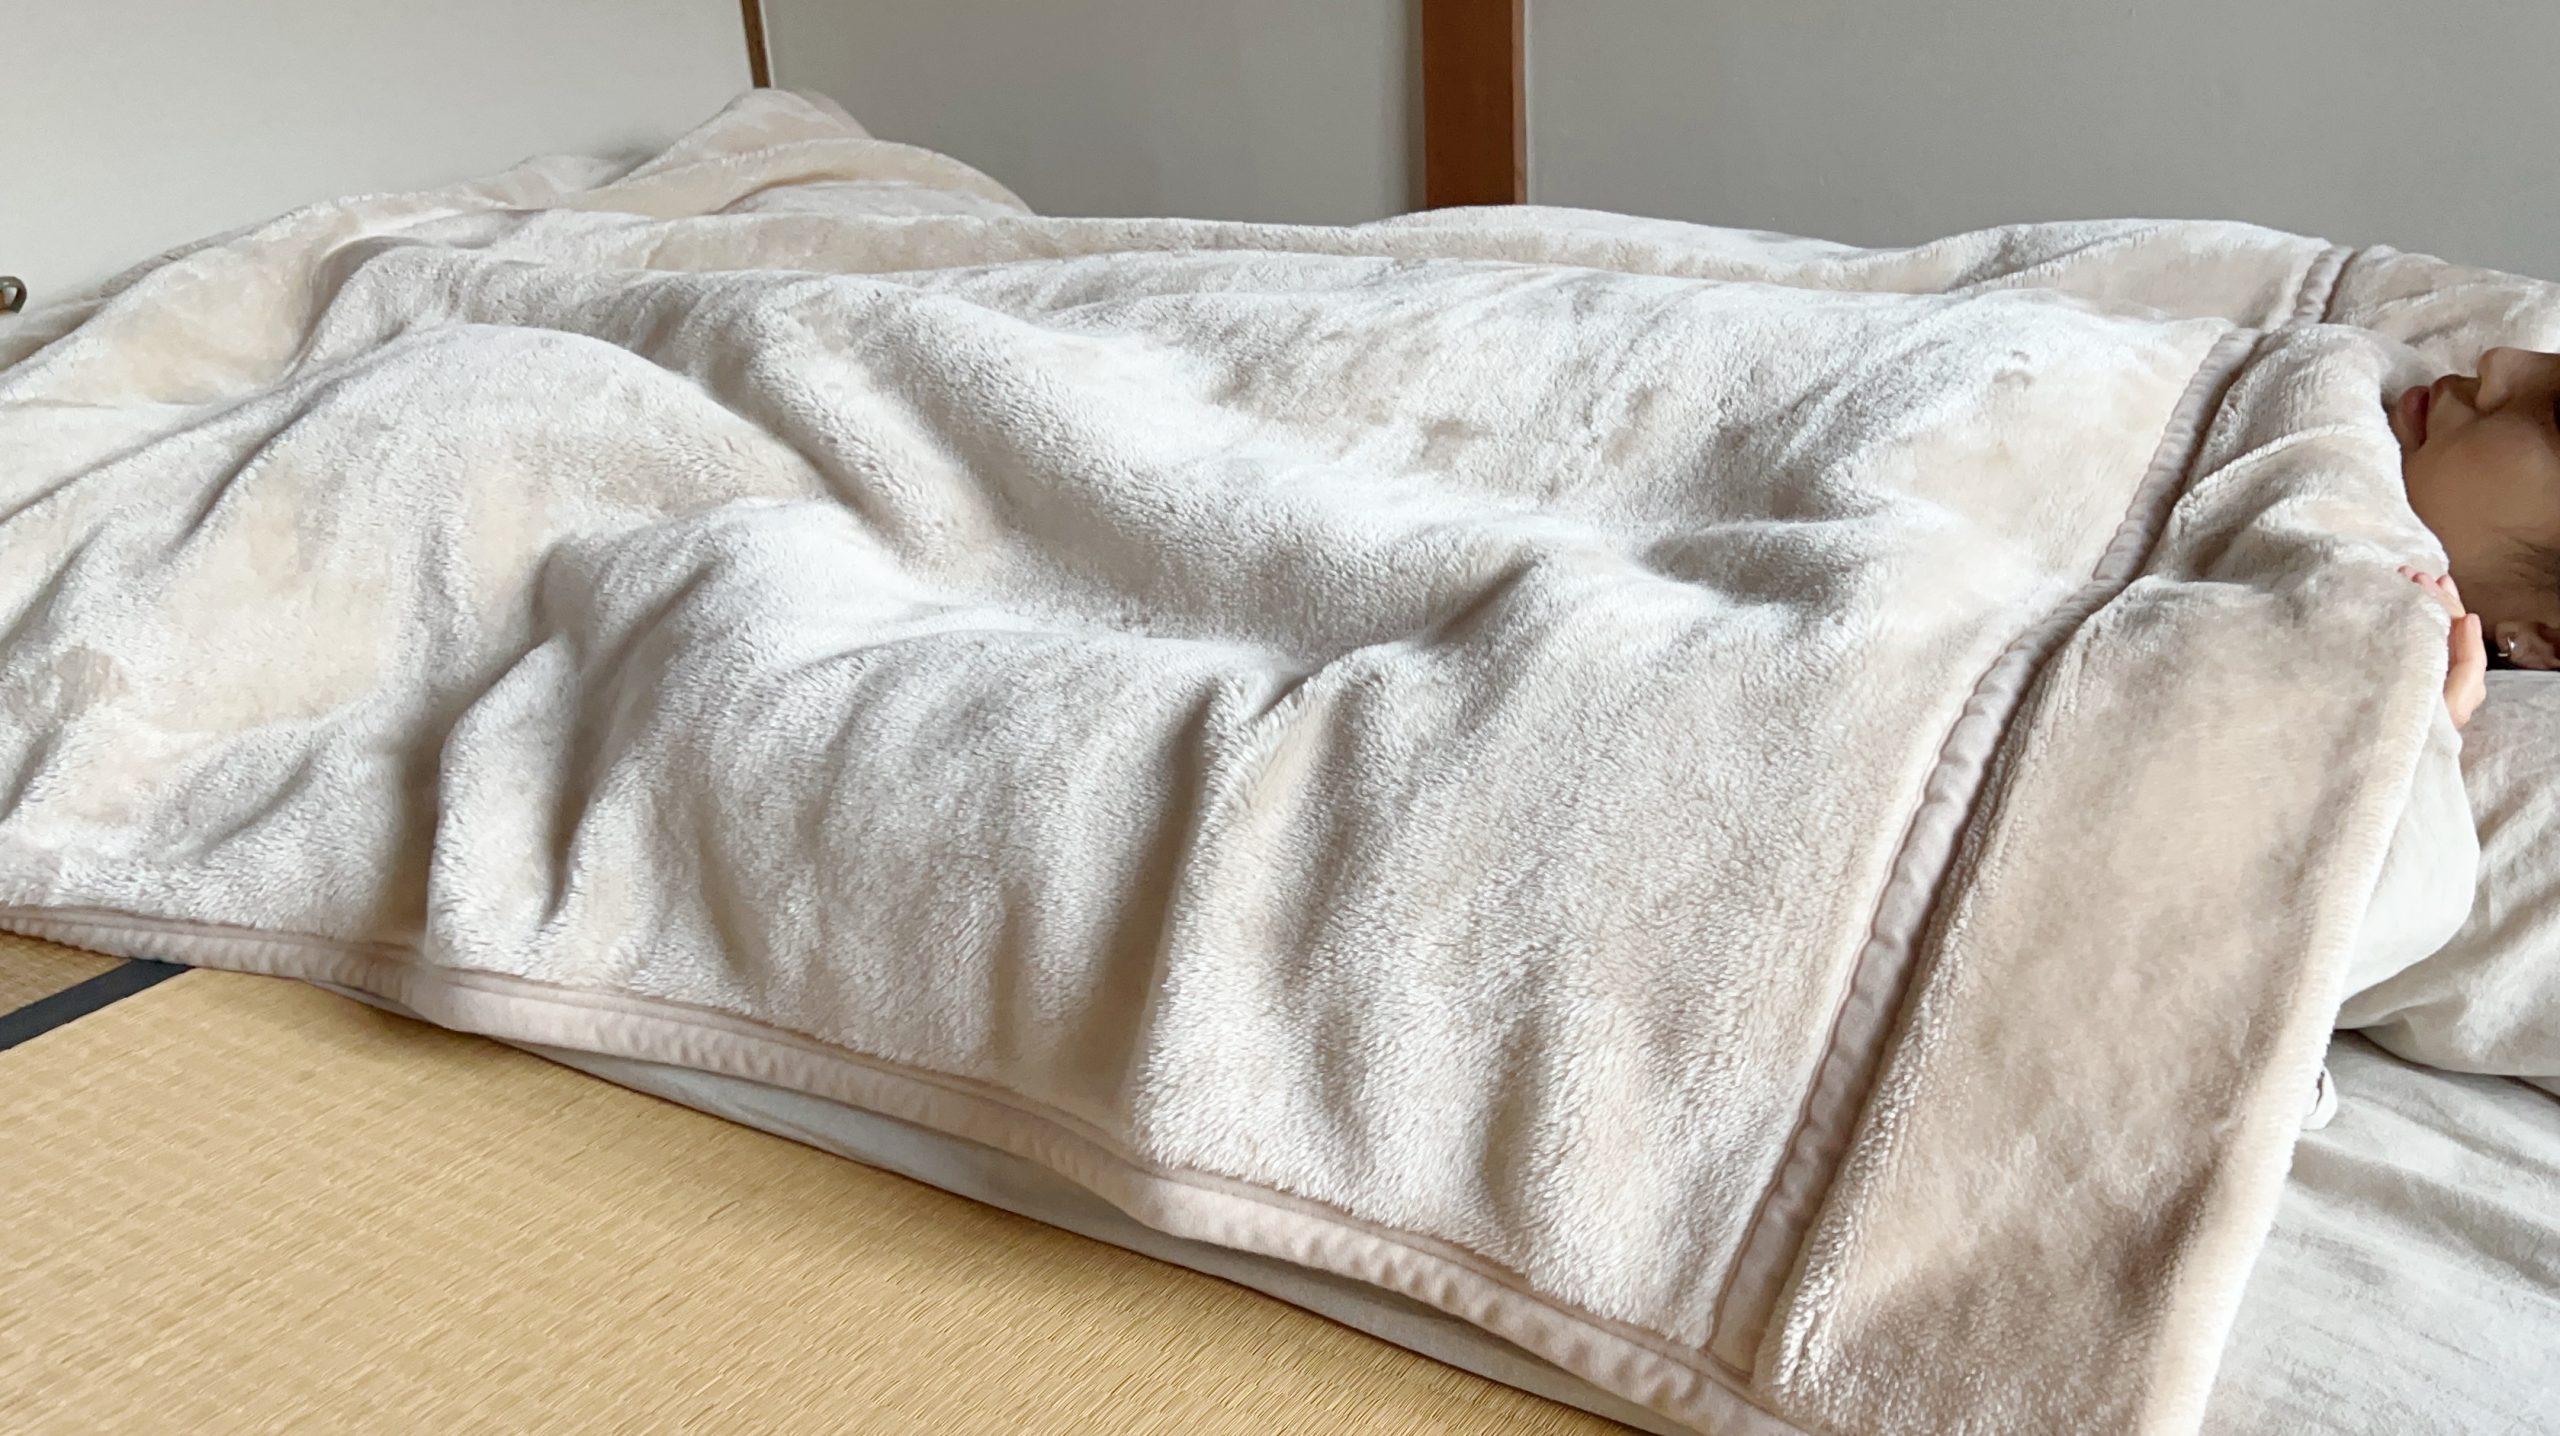 ユニクロの「ヒートテック毛布」のおかげで、毎日朝までぬくぬく眠れる